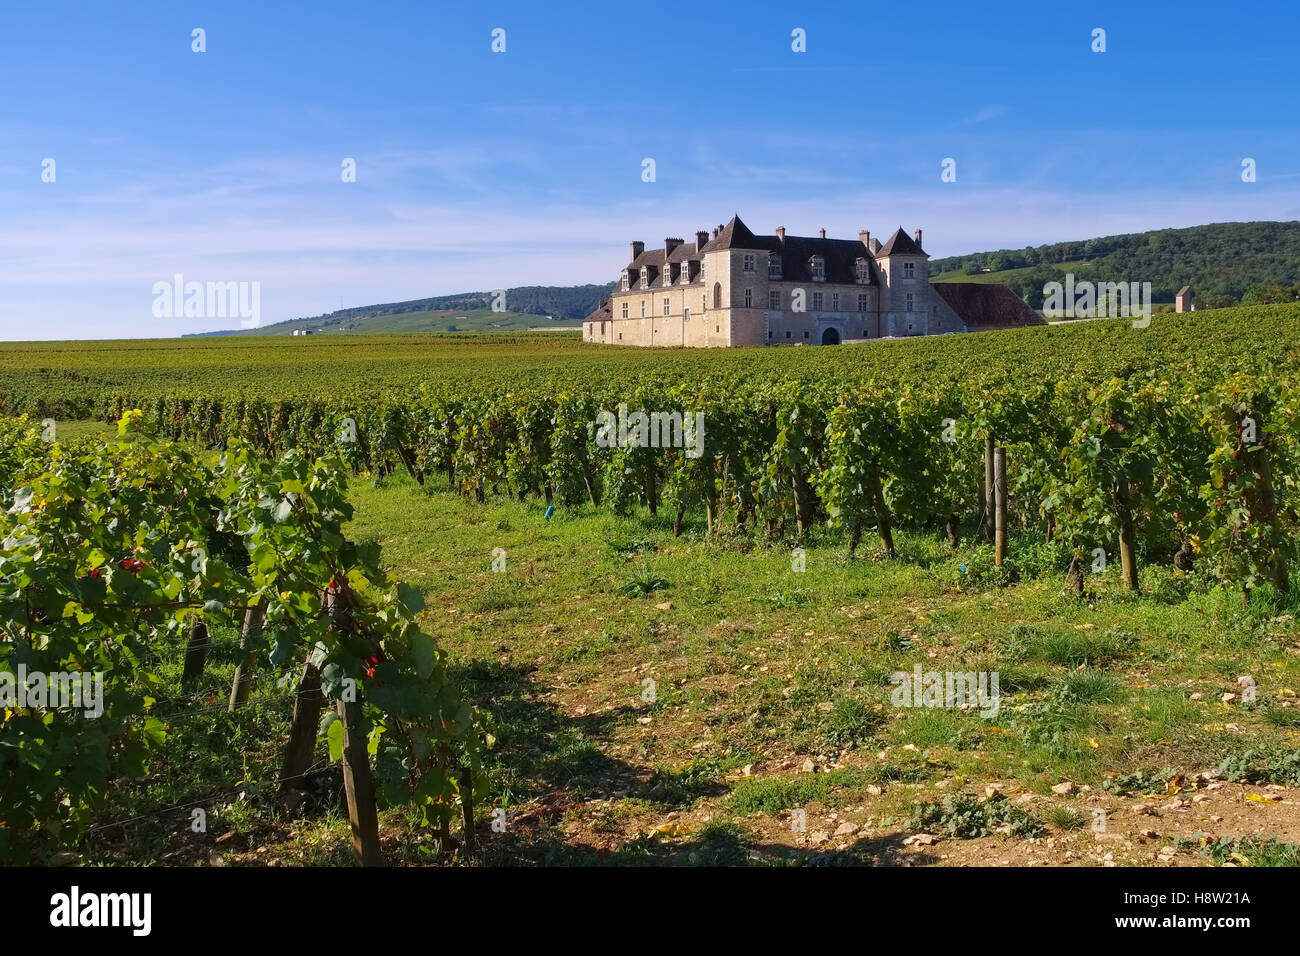 Chateau du Clos de Vougeot, Burgund - Chateau du Clos de Vougeot, Cote d'Or, Burgundy in France Stock Photo